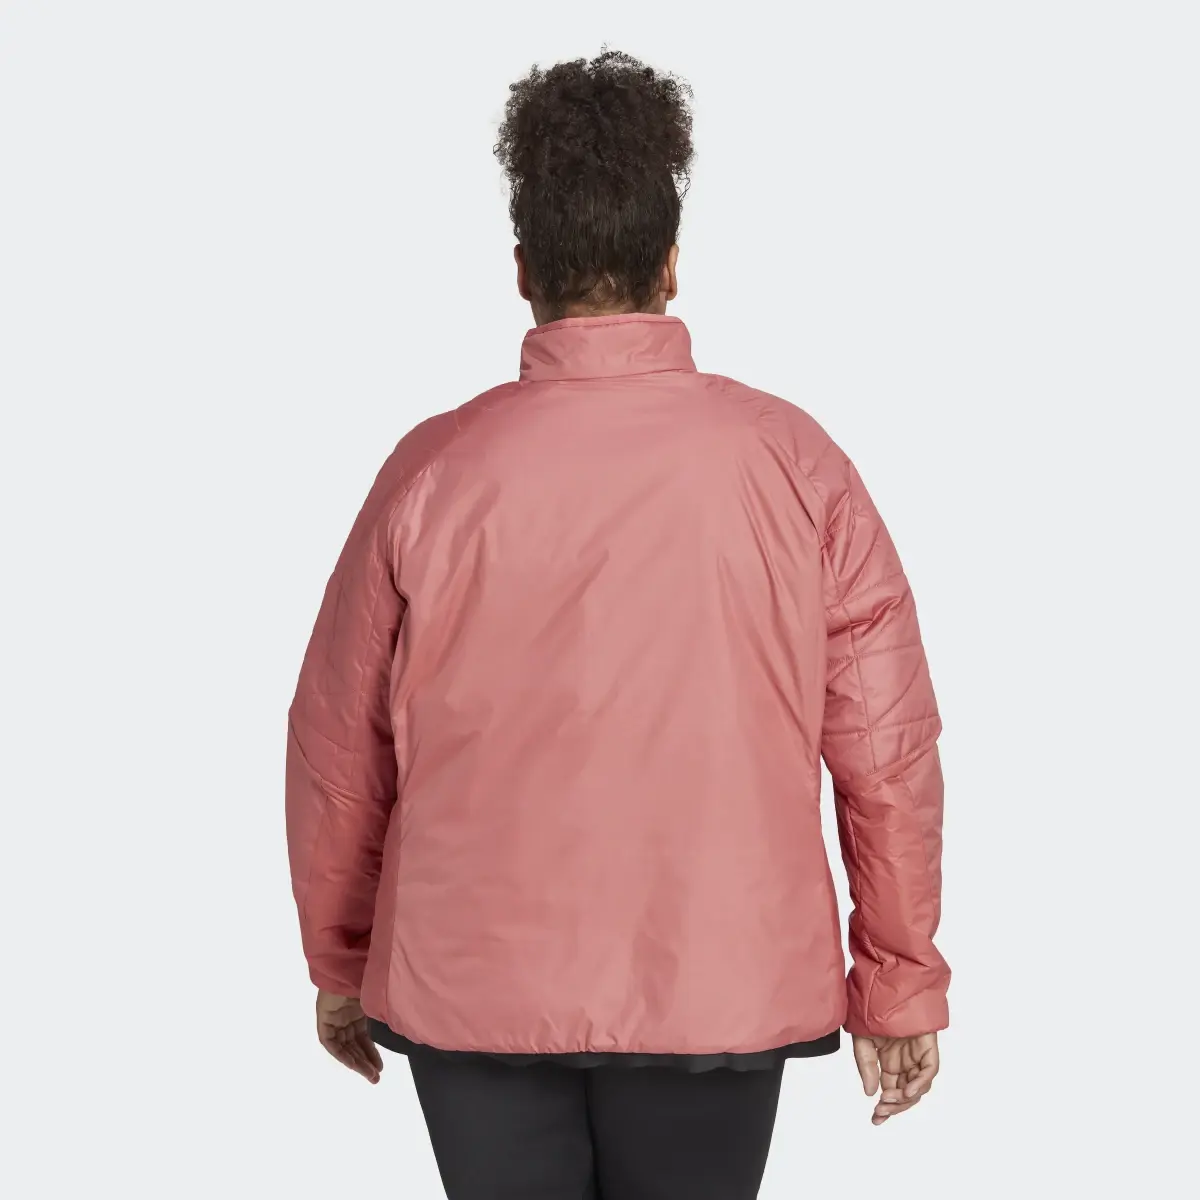 Adidas TERREX Multi Insulated Jacke – Große Größen. 3